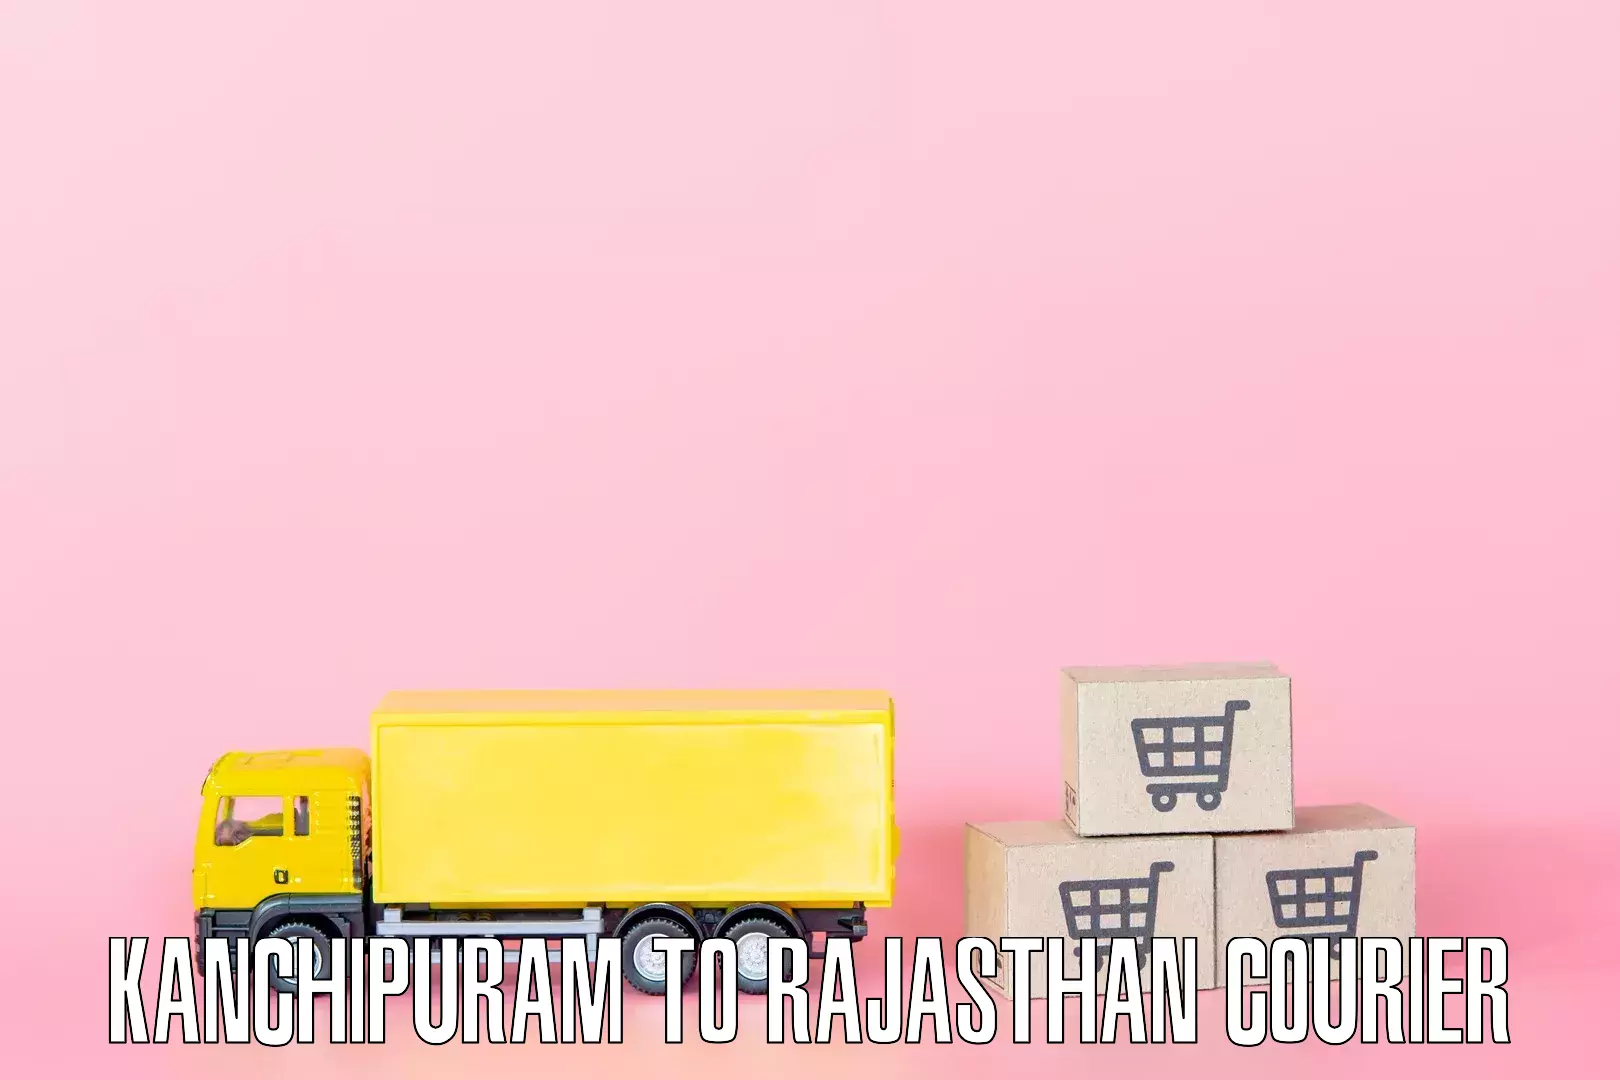 Professional furniture moving Kanchipuram to Chittorgarh